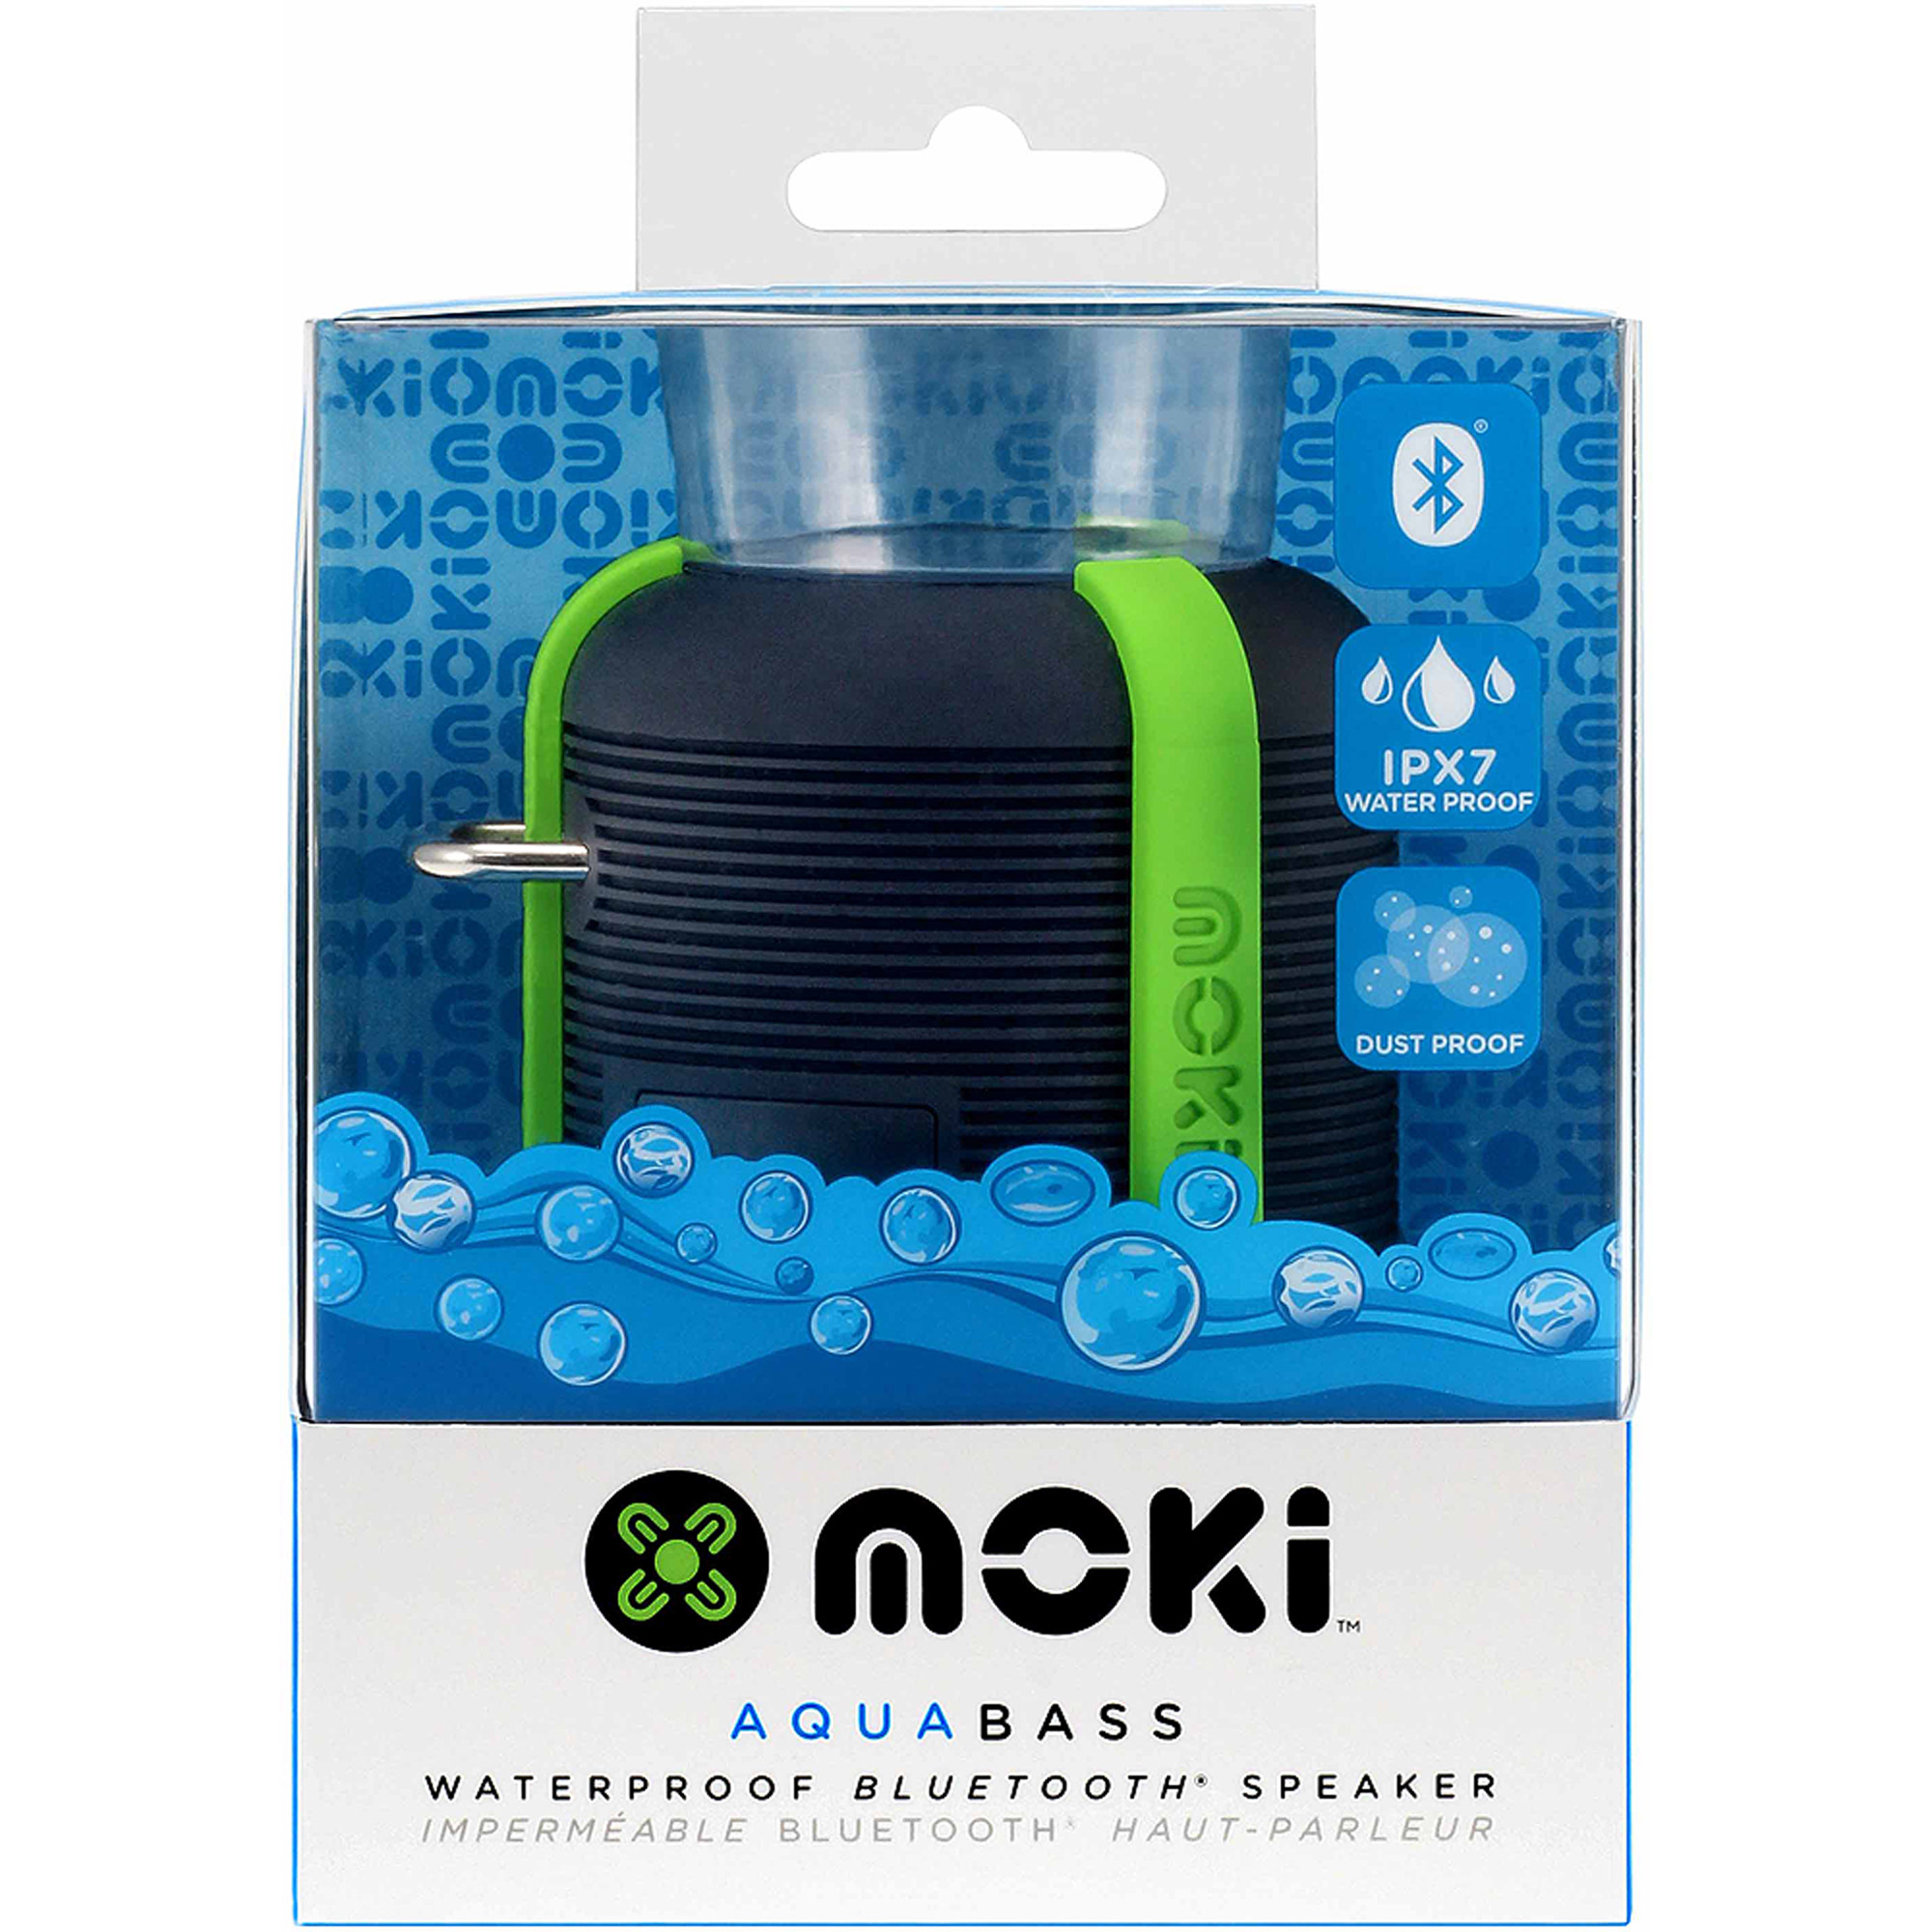 Aquabass Waterproof Bluetooth Speaker Black And Gr